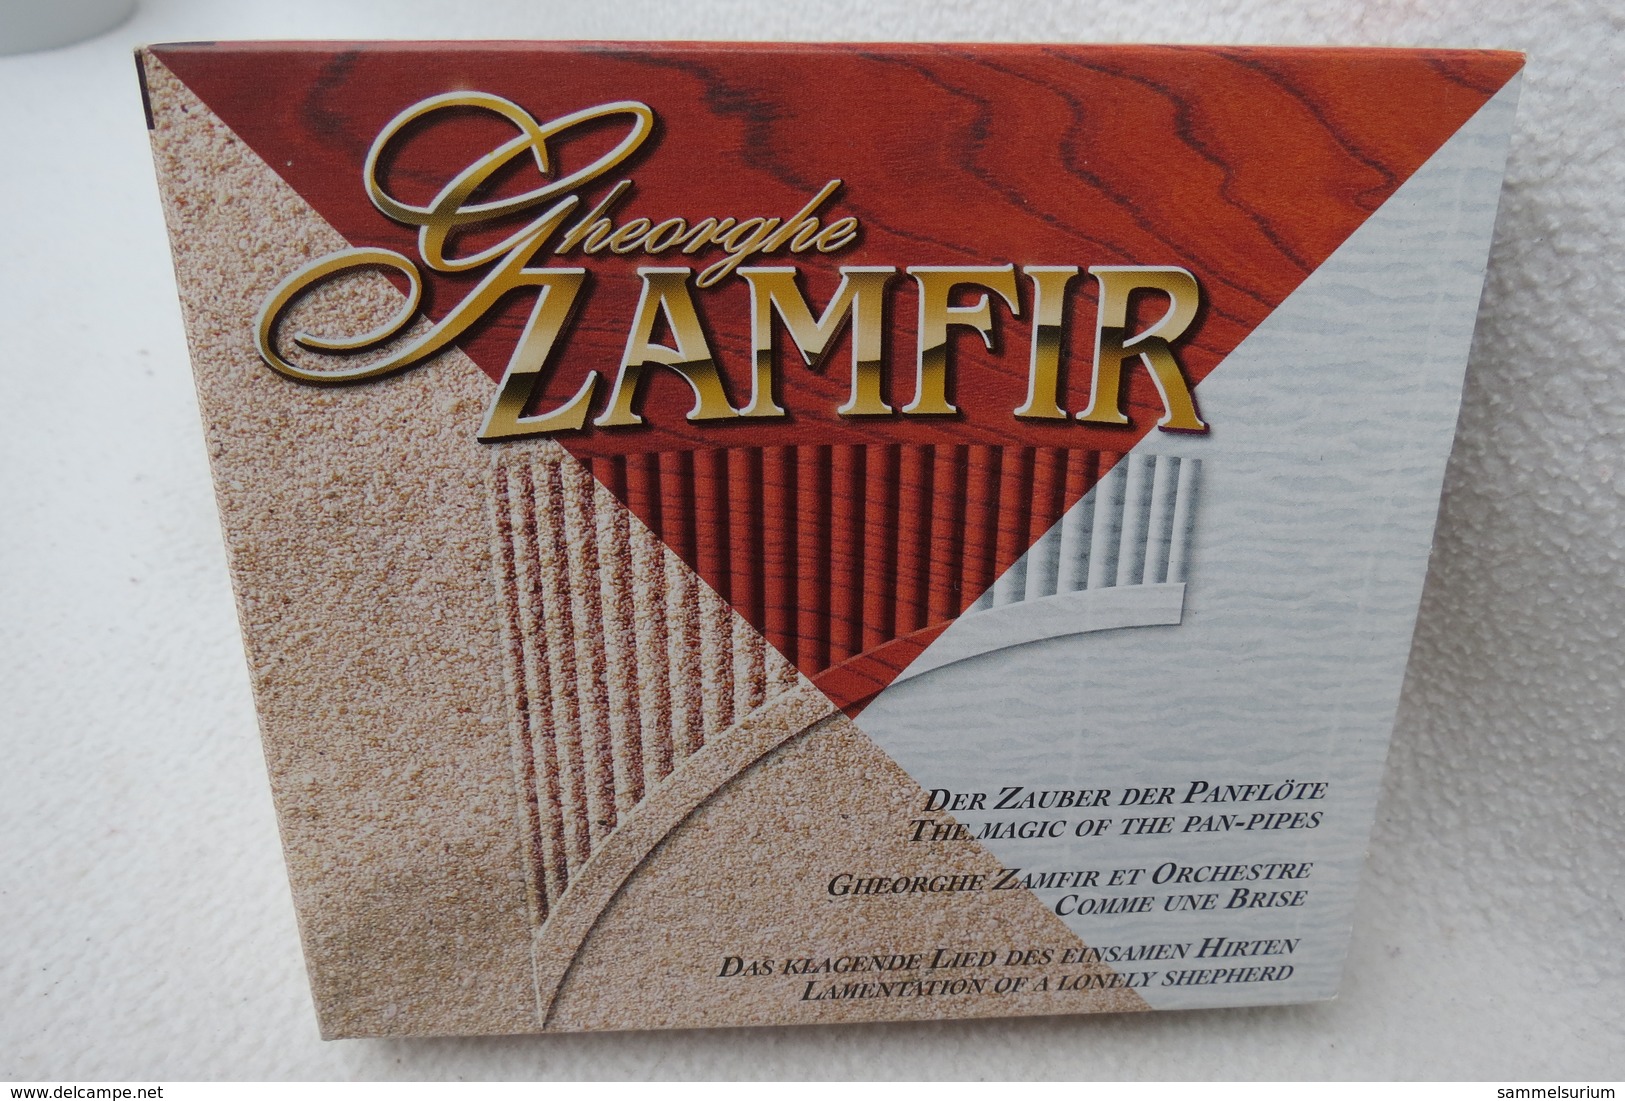 3 CD-Set "Gheorghe Zamfir" Der Zauber Der Panflöte - Hit-Compilations